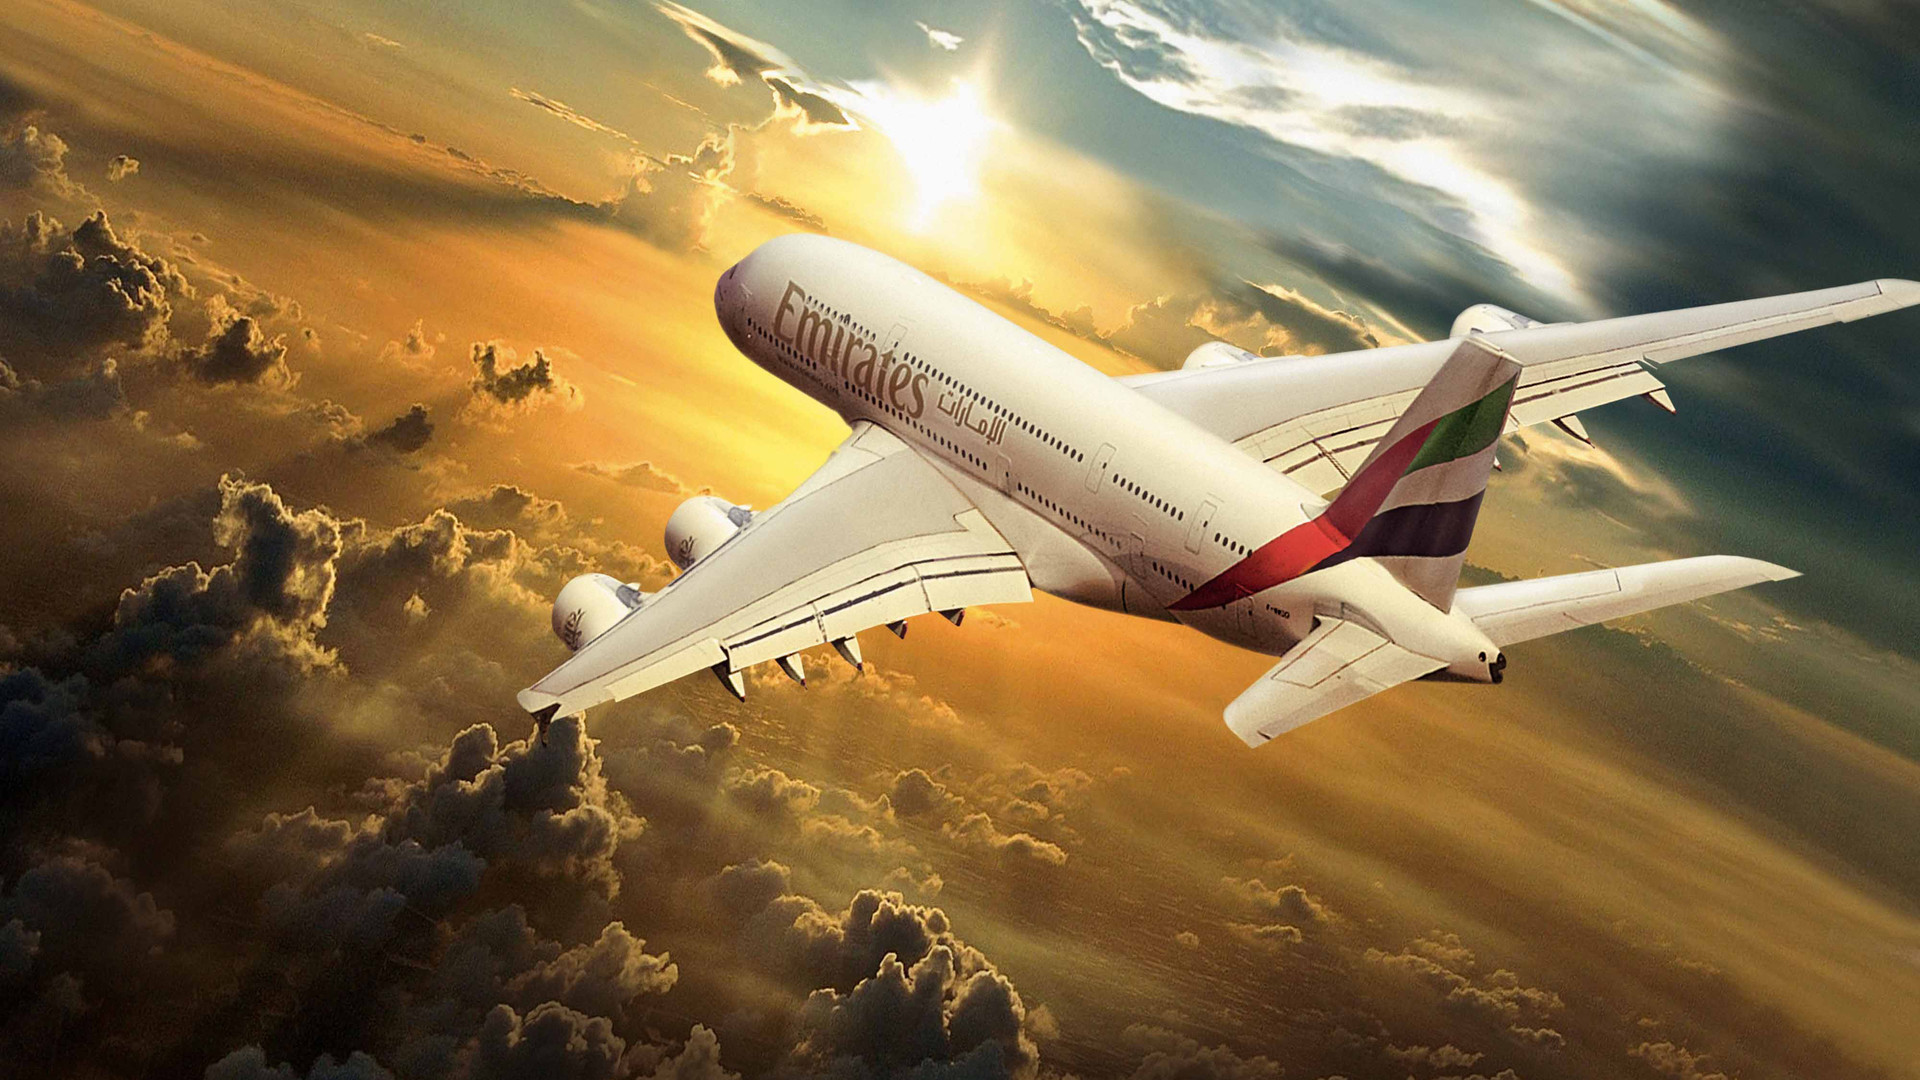 fond d'écran emirates hd,aviation,avion,compagnie aérienne,avion,avion de ligne